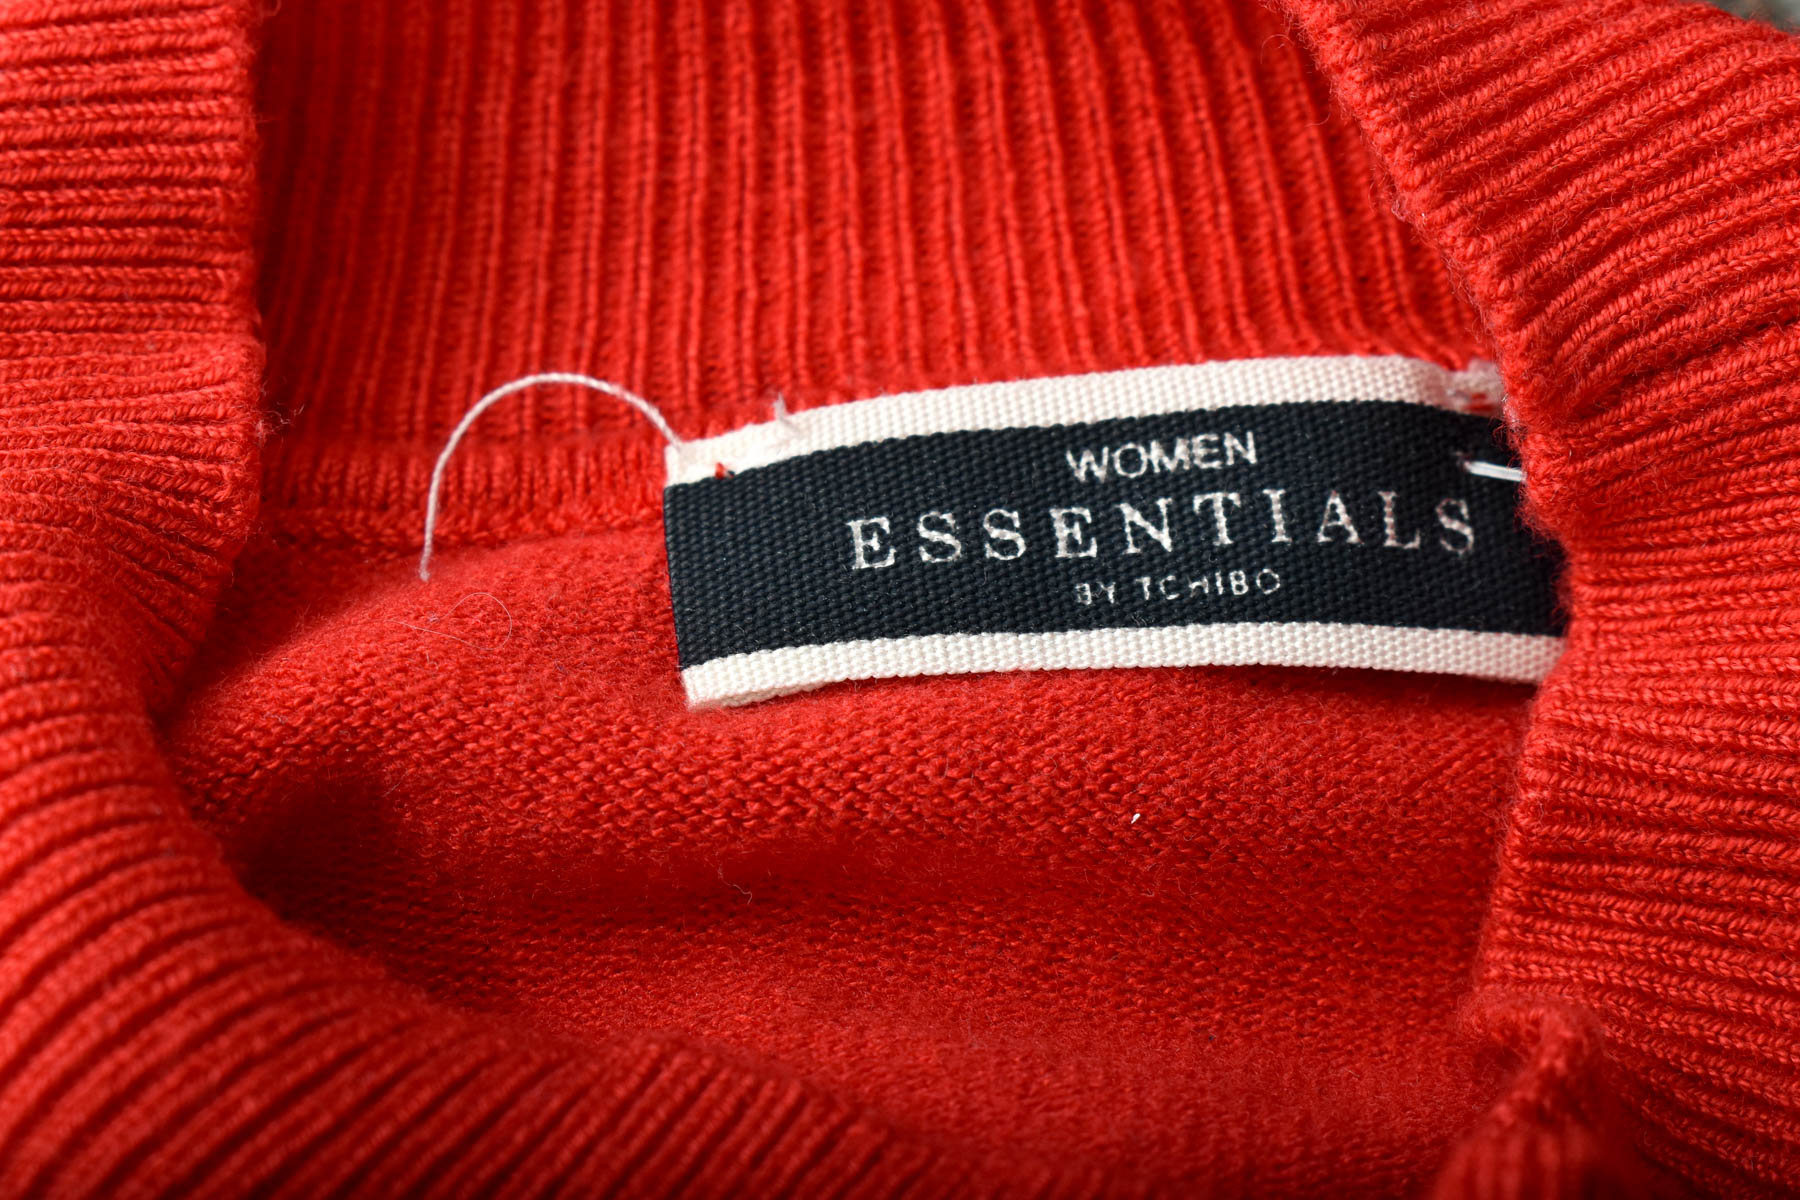 Women's sweater - WOMEN essentials by Tchibo - 2